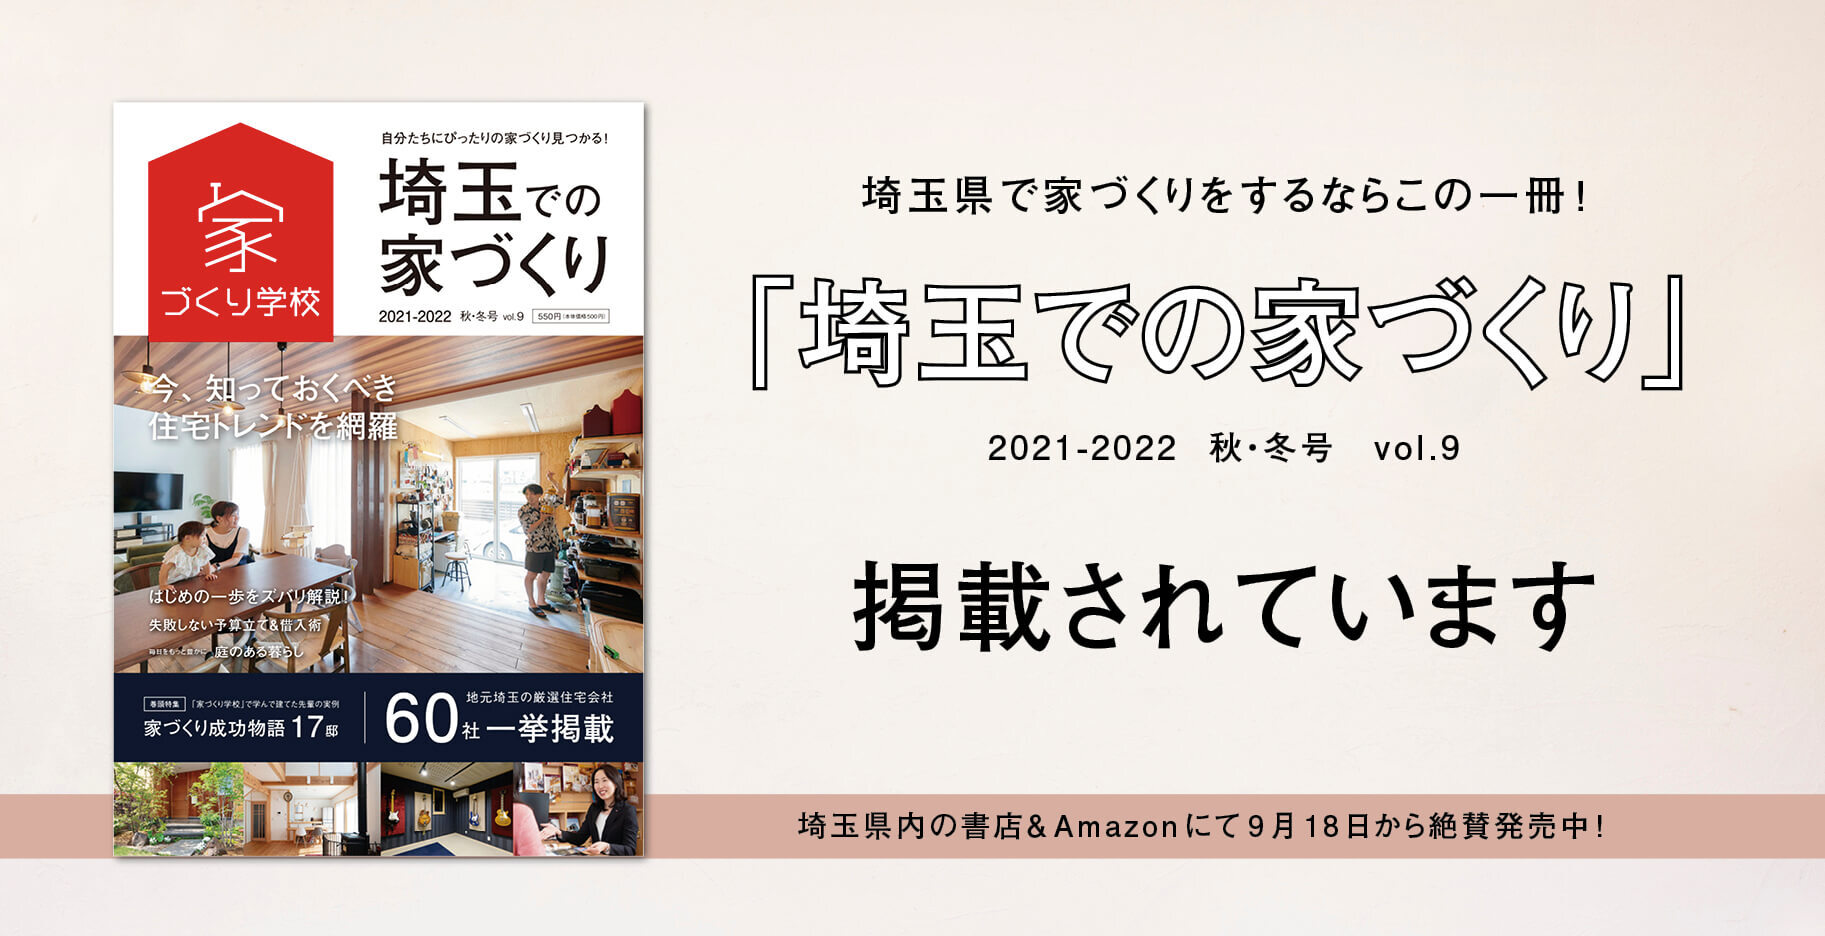 「埼玉での家づくりVol.9」に当社の施工例が掲載されています。